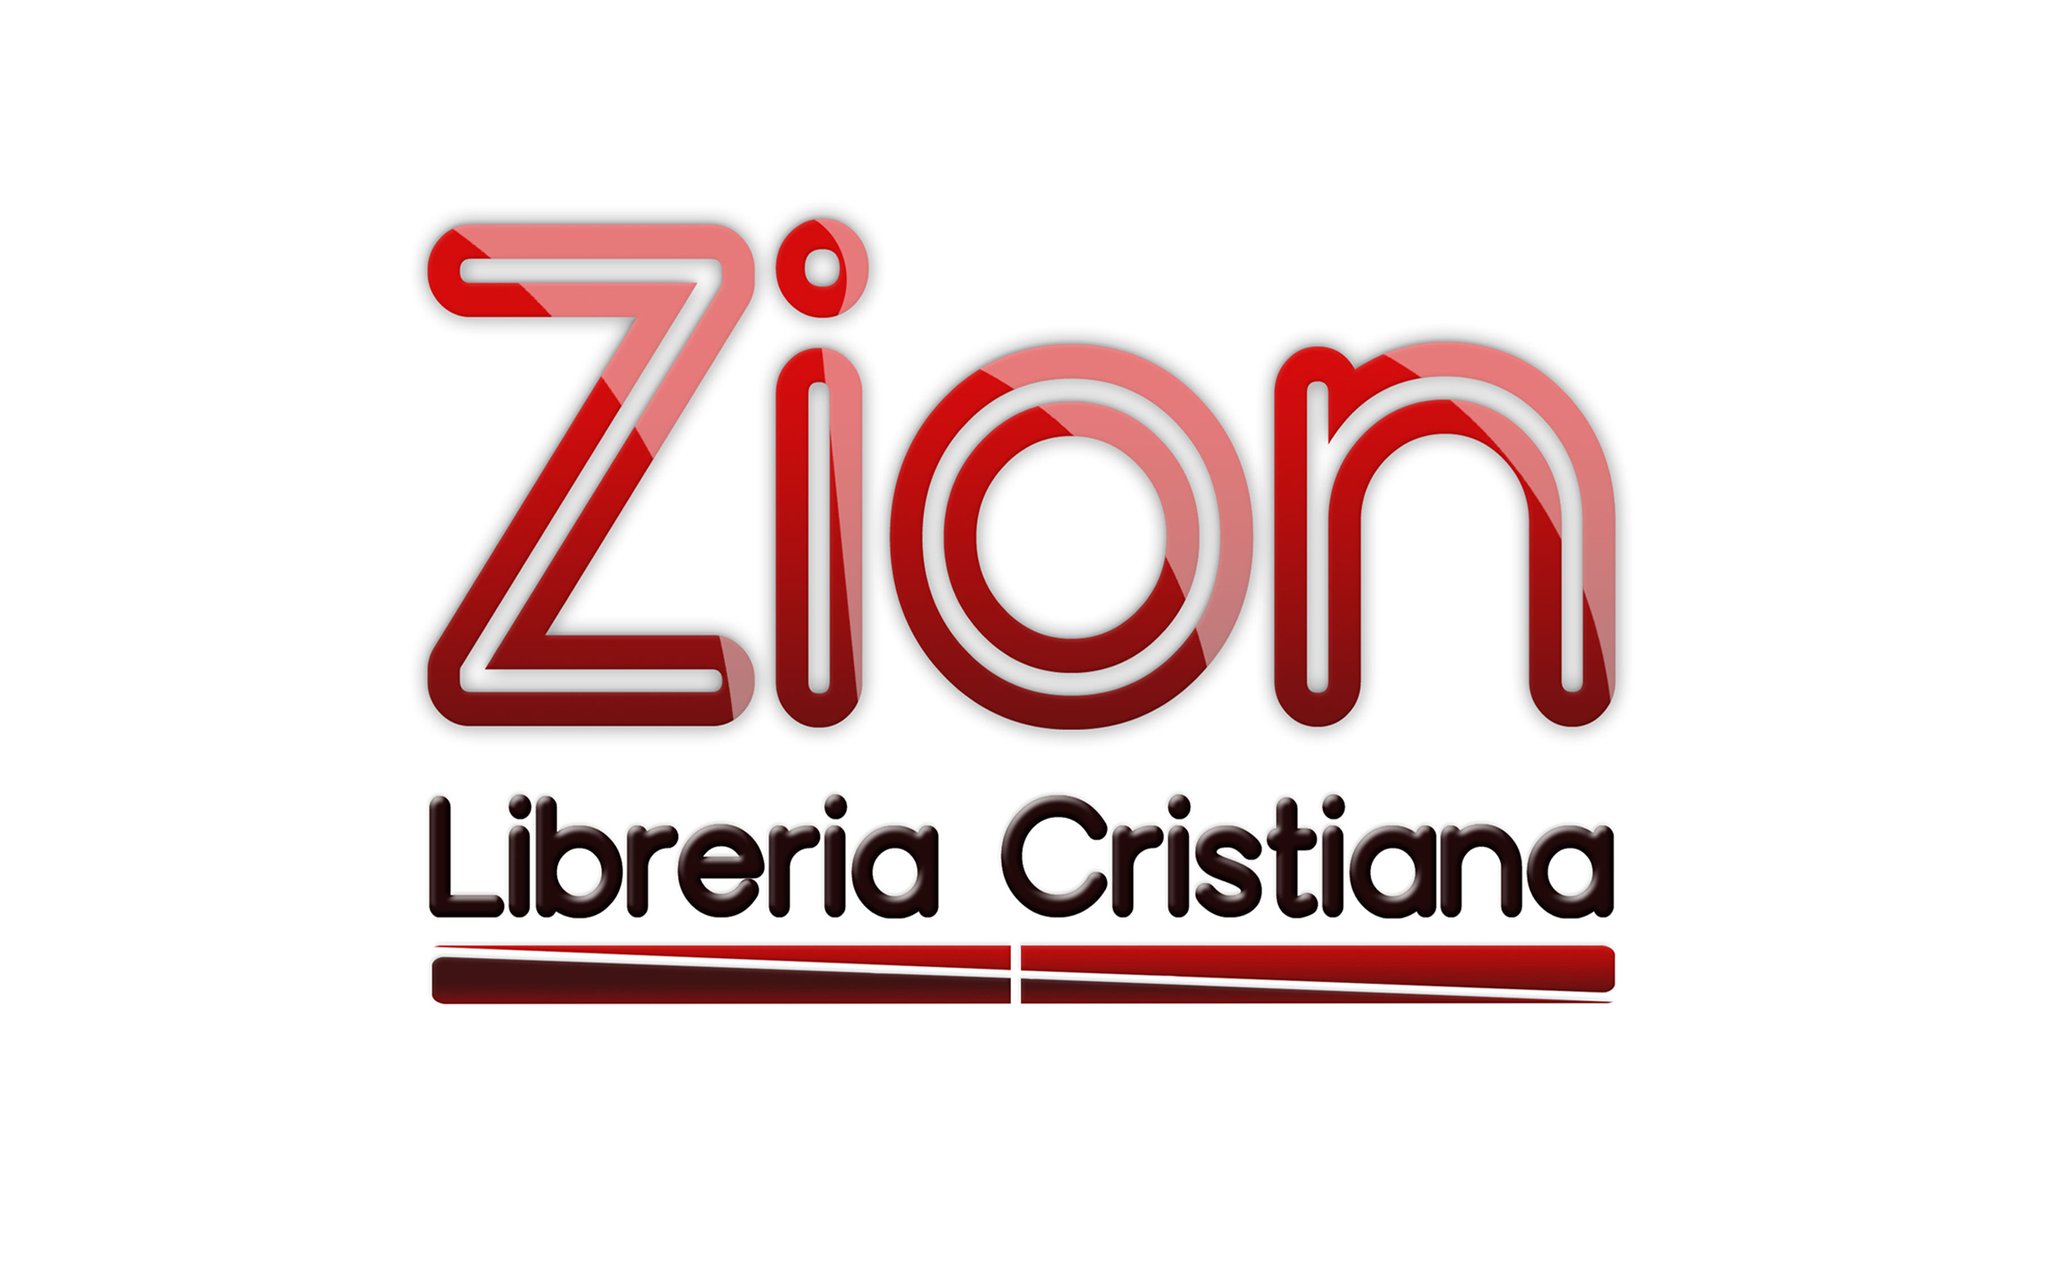 Zion Libreria Cristiana